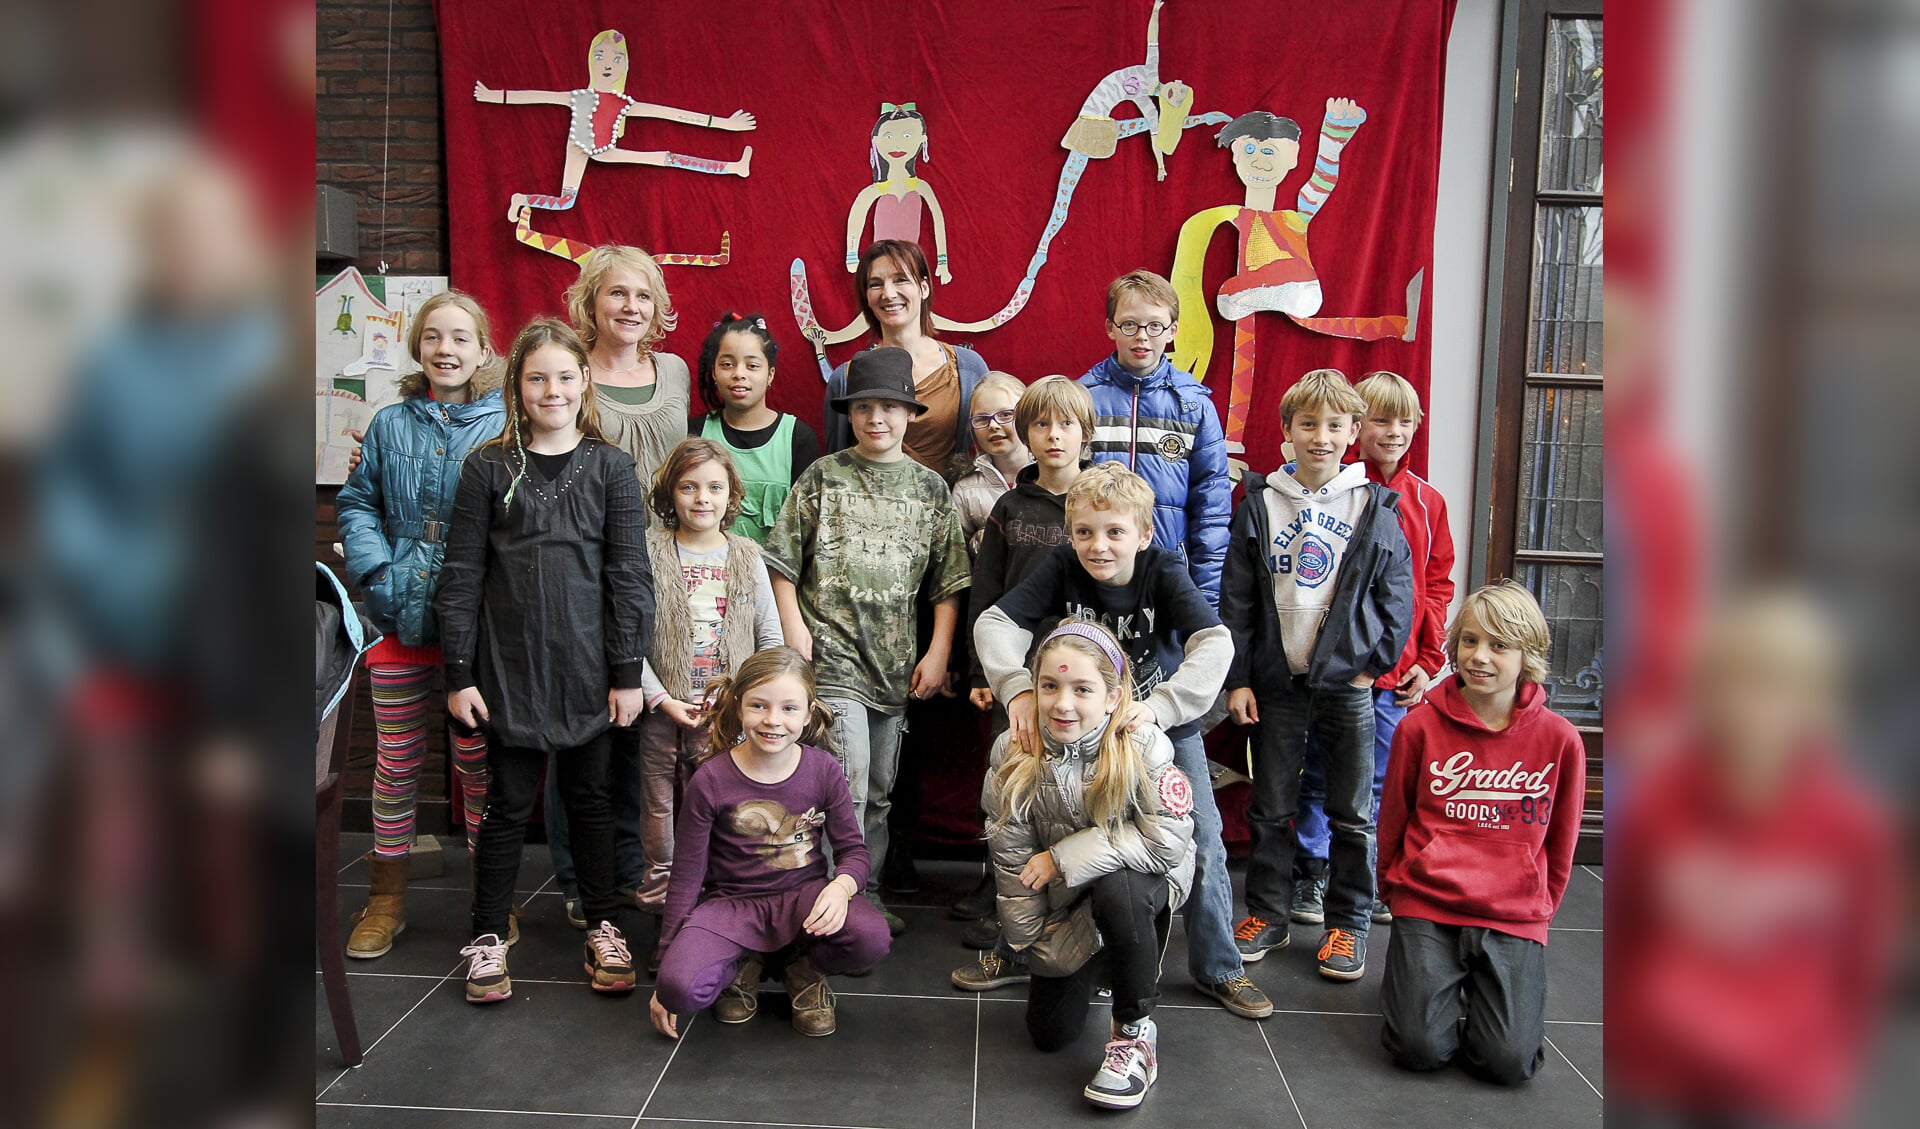 De leerlingen en docenten van Kunst & Knutsels, met op de achtergrond acrobaten van karton 